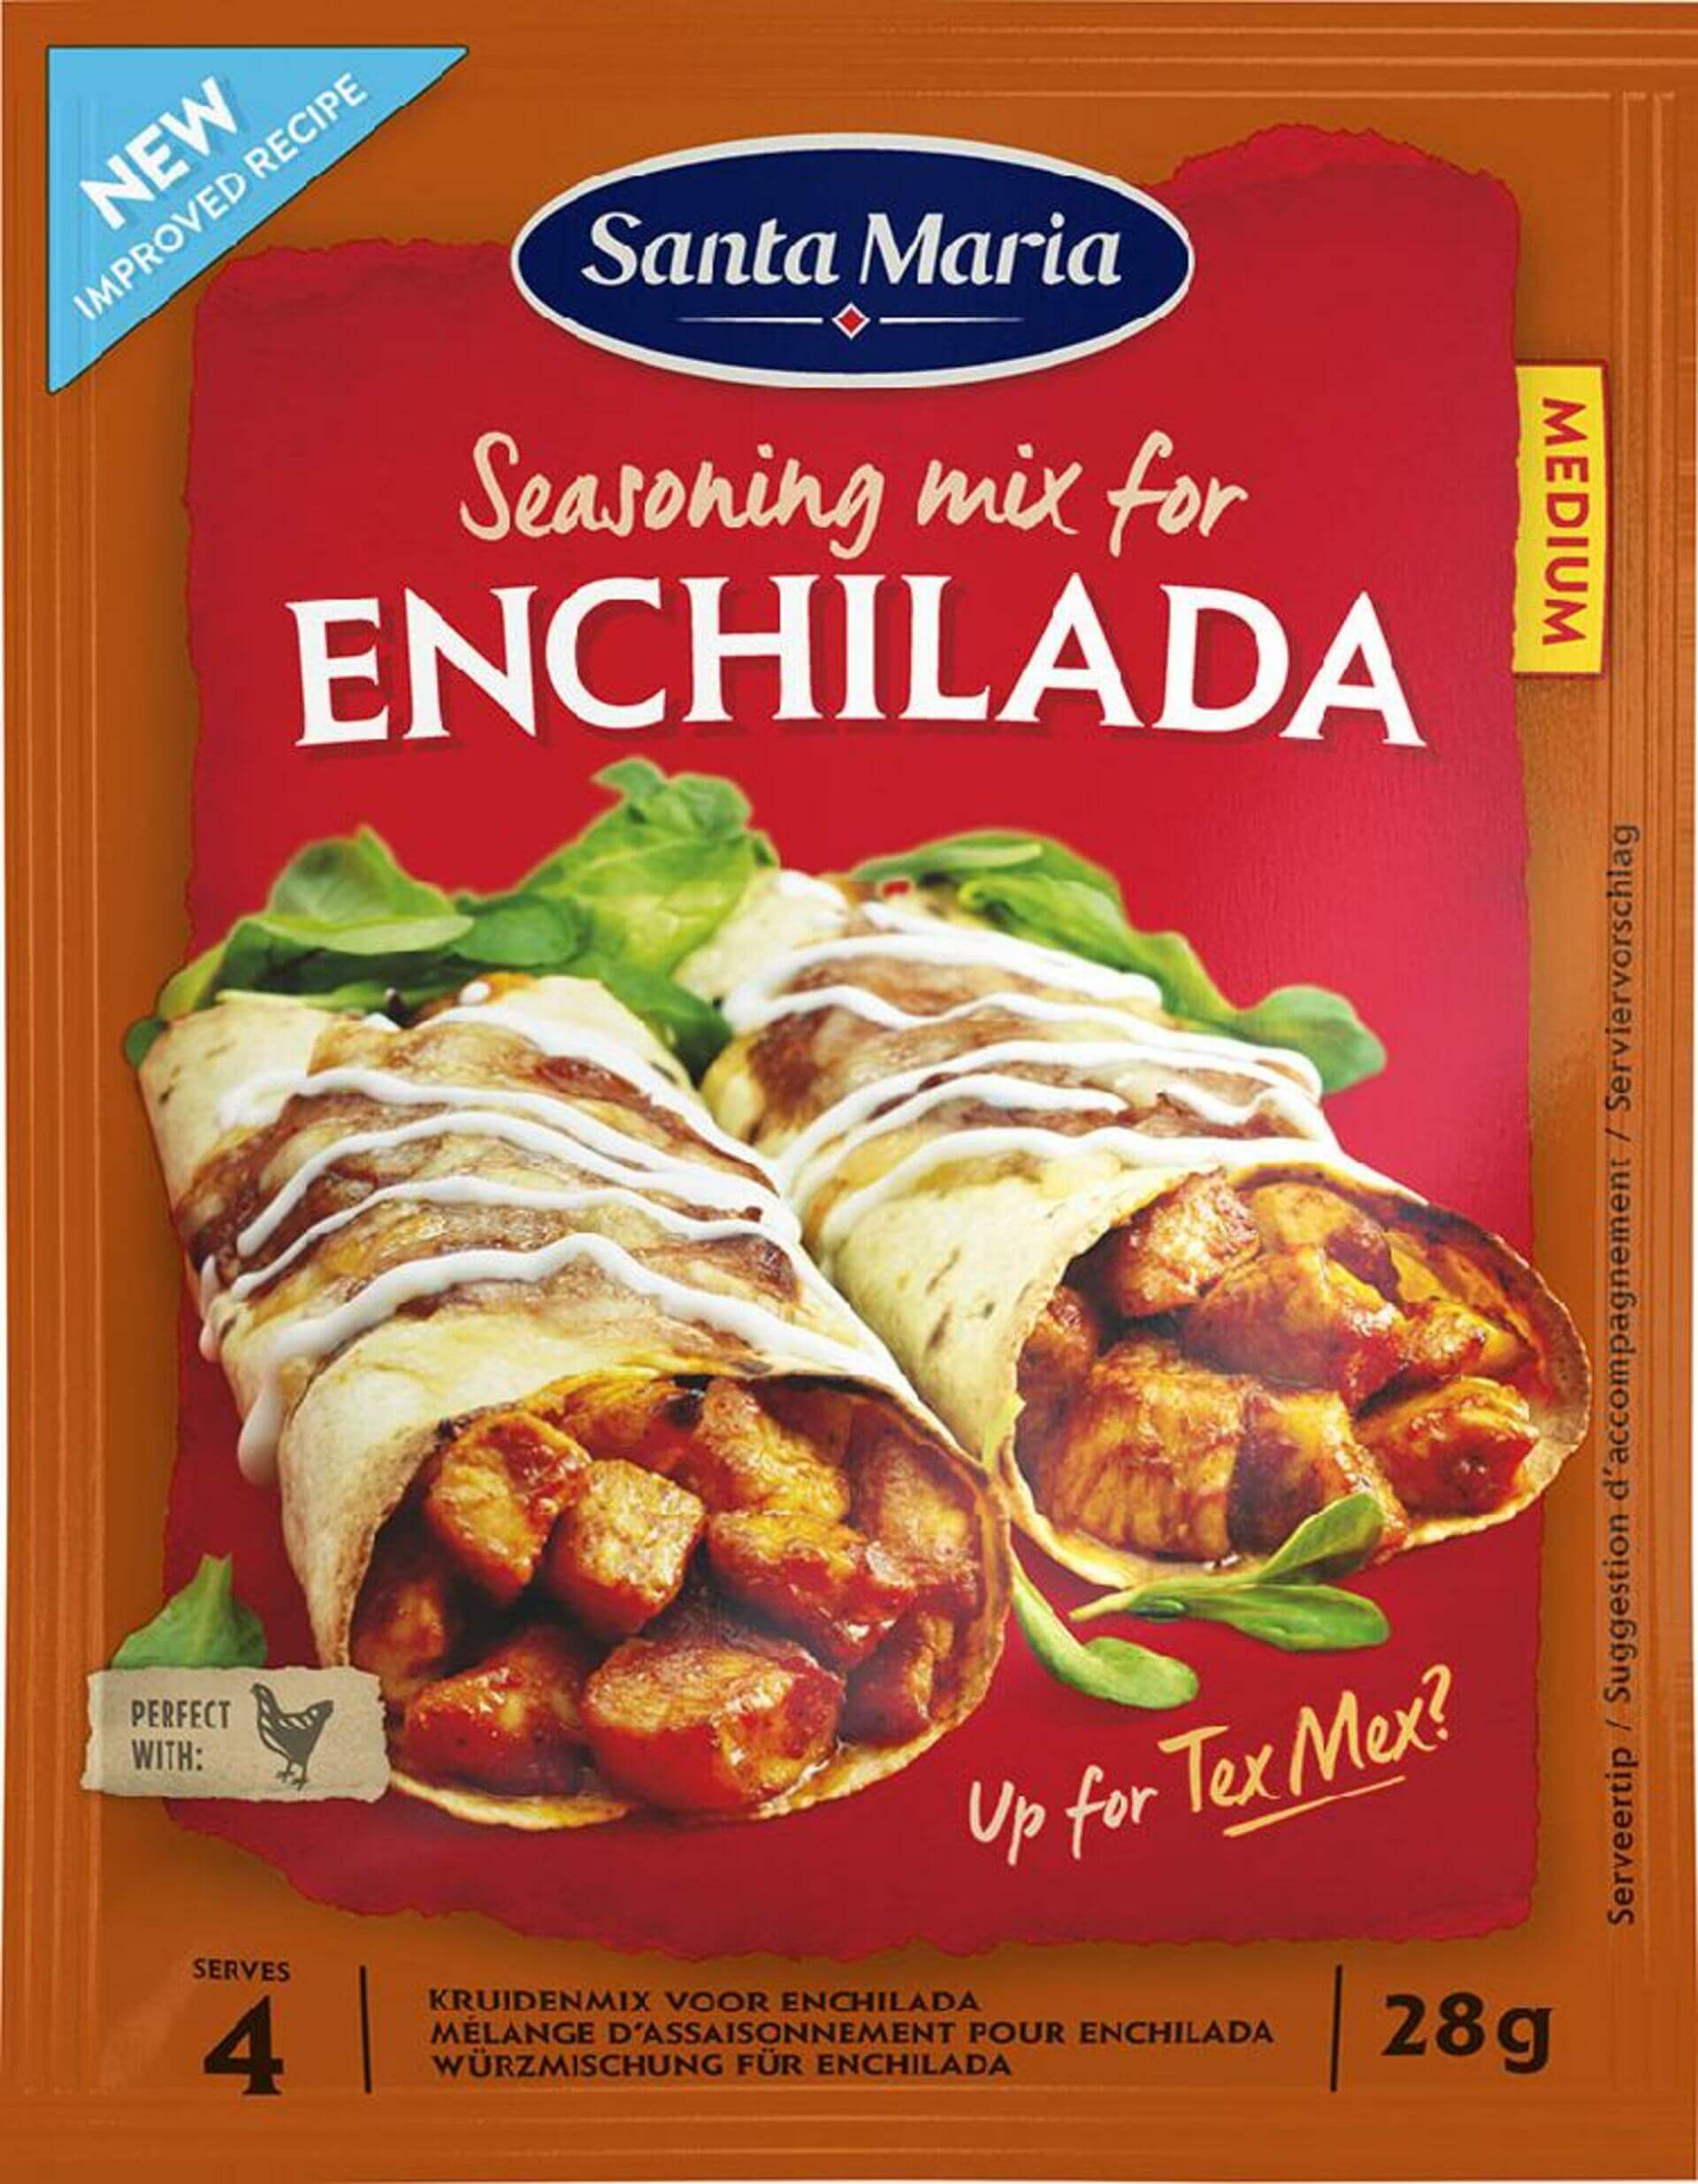 Santa Maria Enchilada Seasoning Mix 28 g